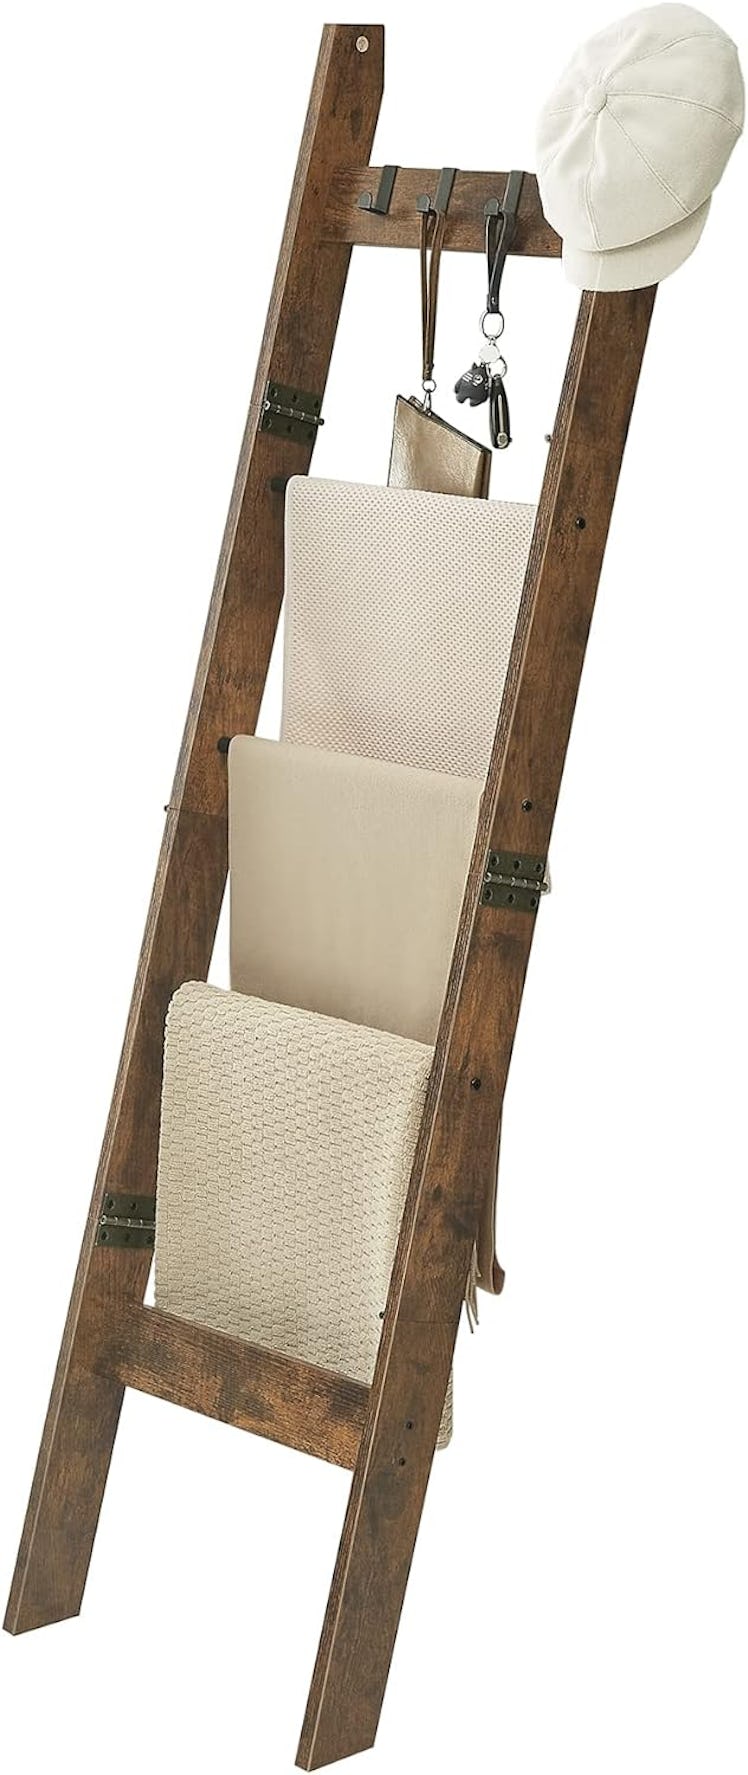 Hzuaneri Blanket Ladder Shelf